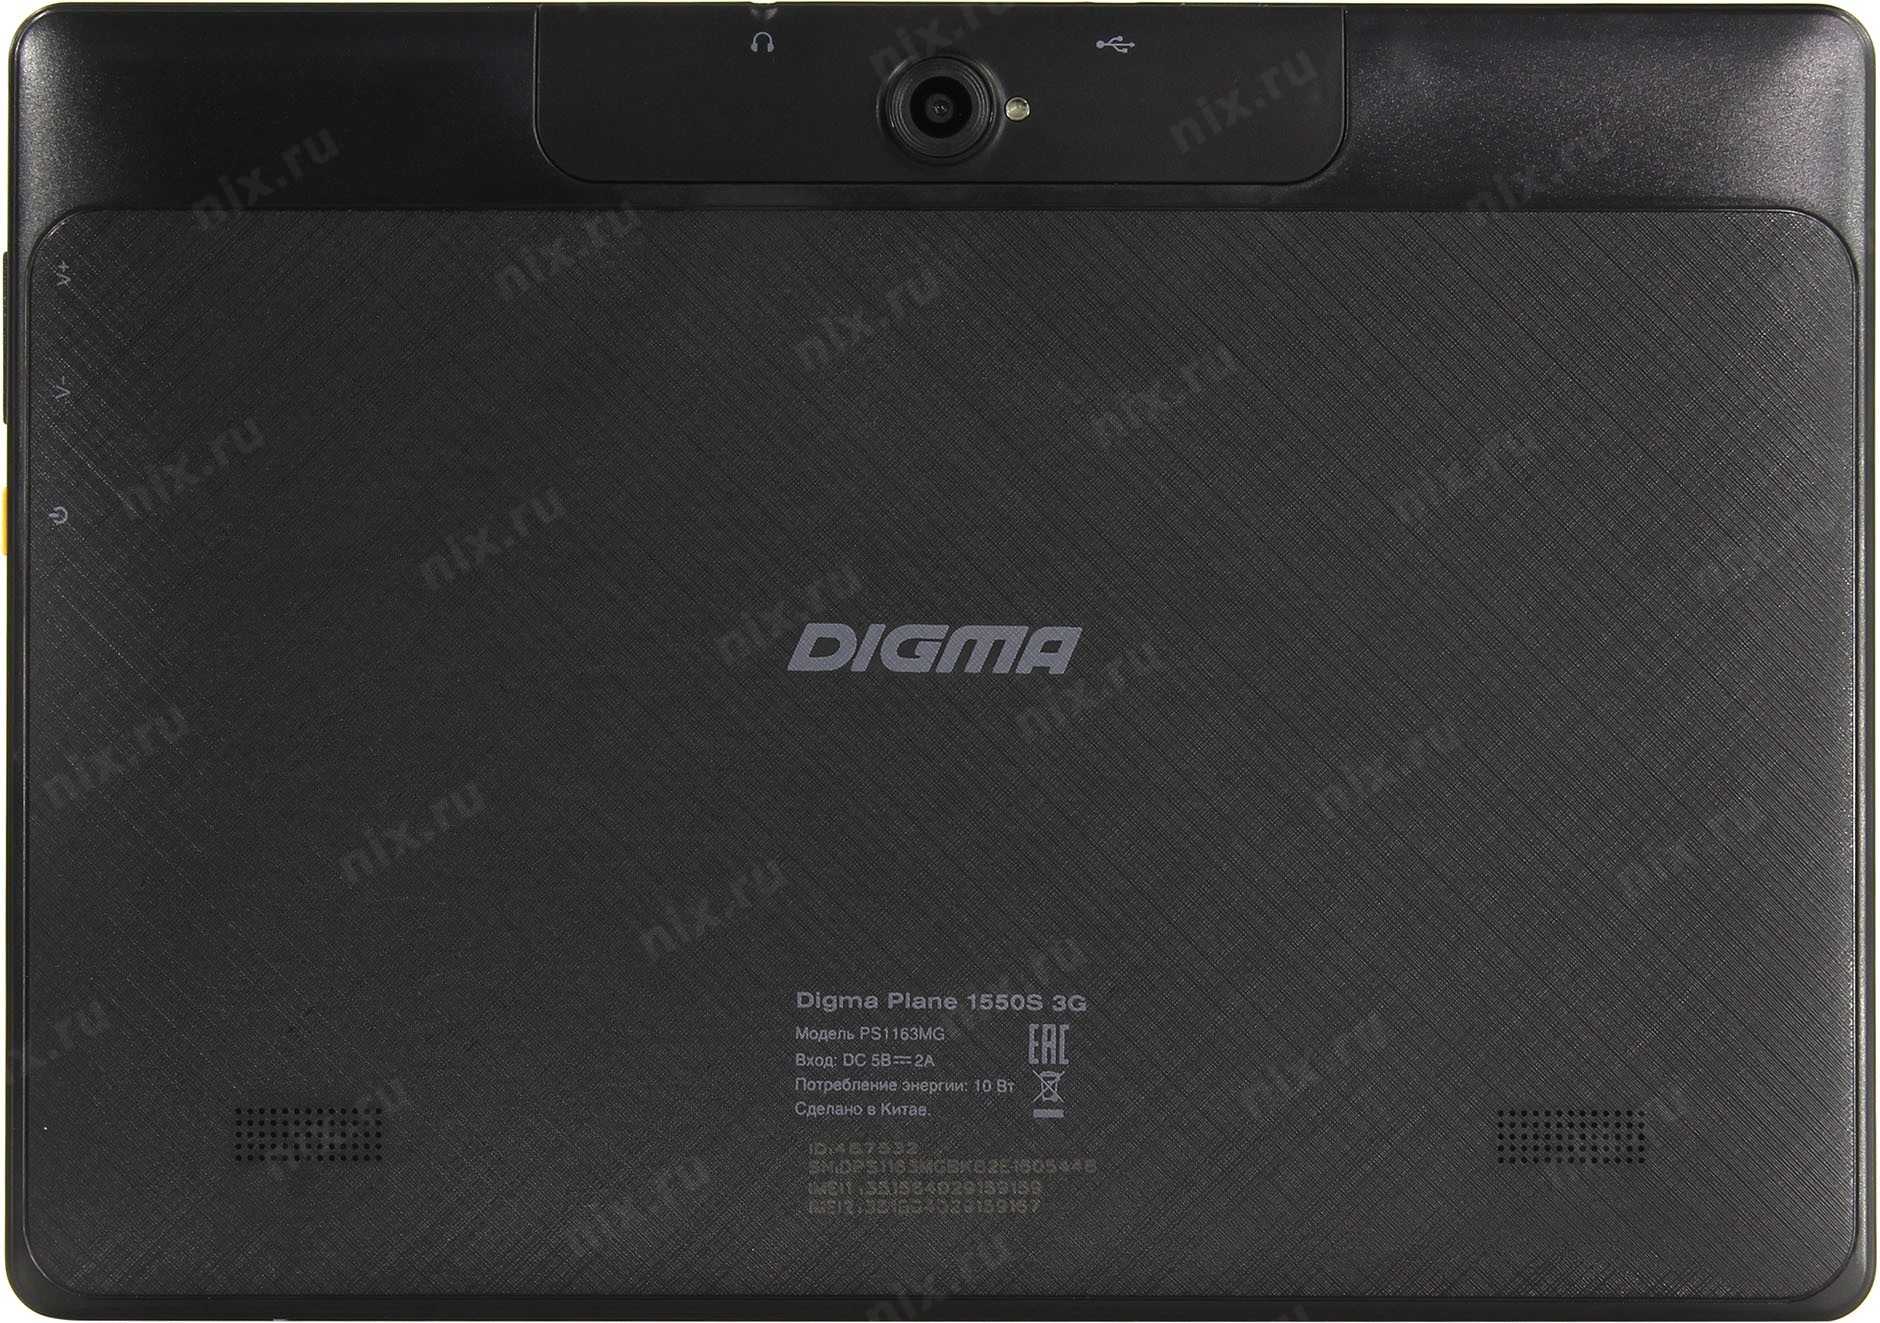 Планшеты digma: обзор т-10 лучших устройств